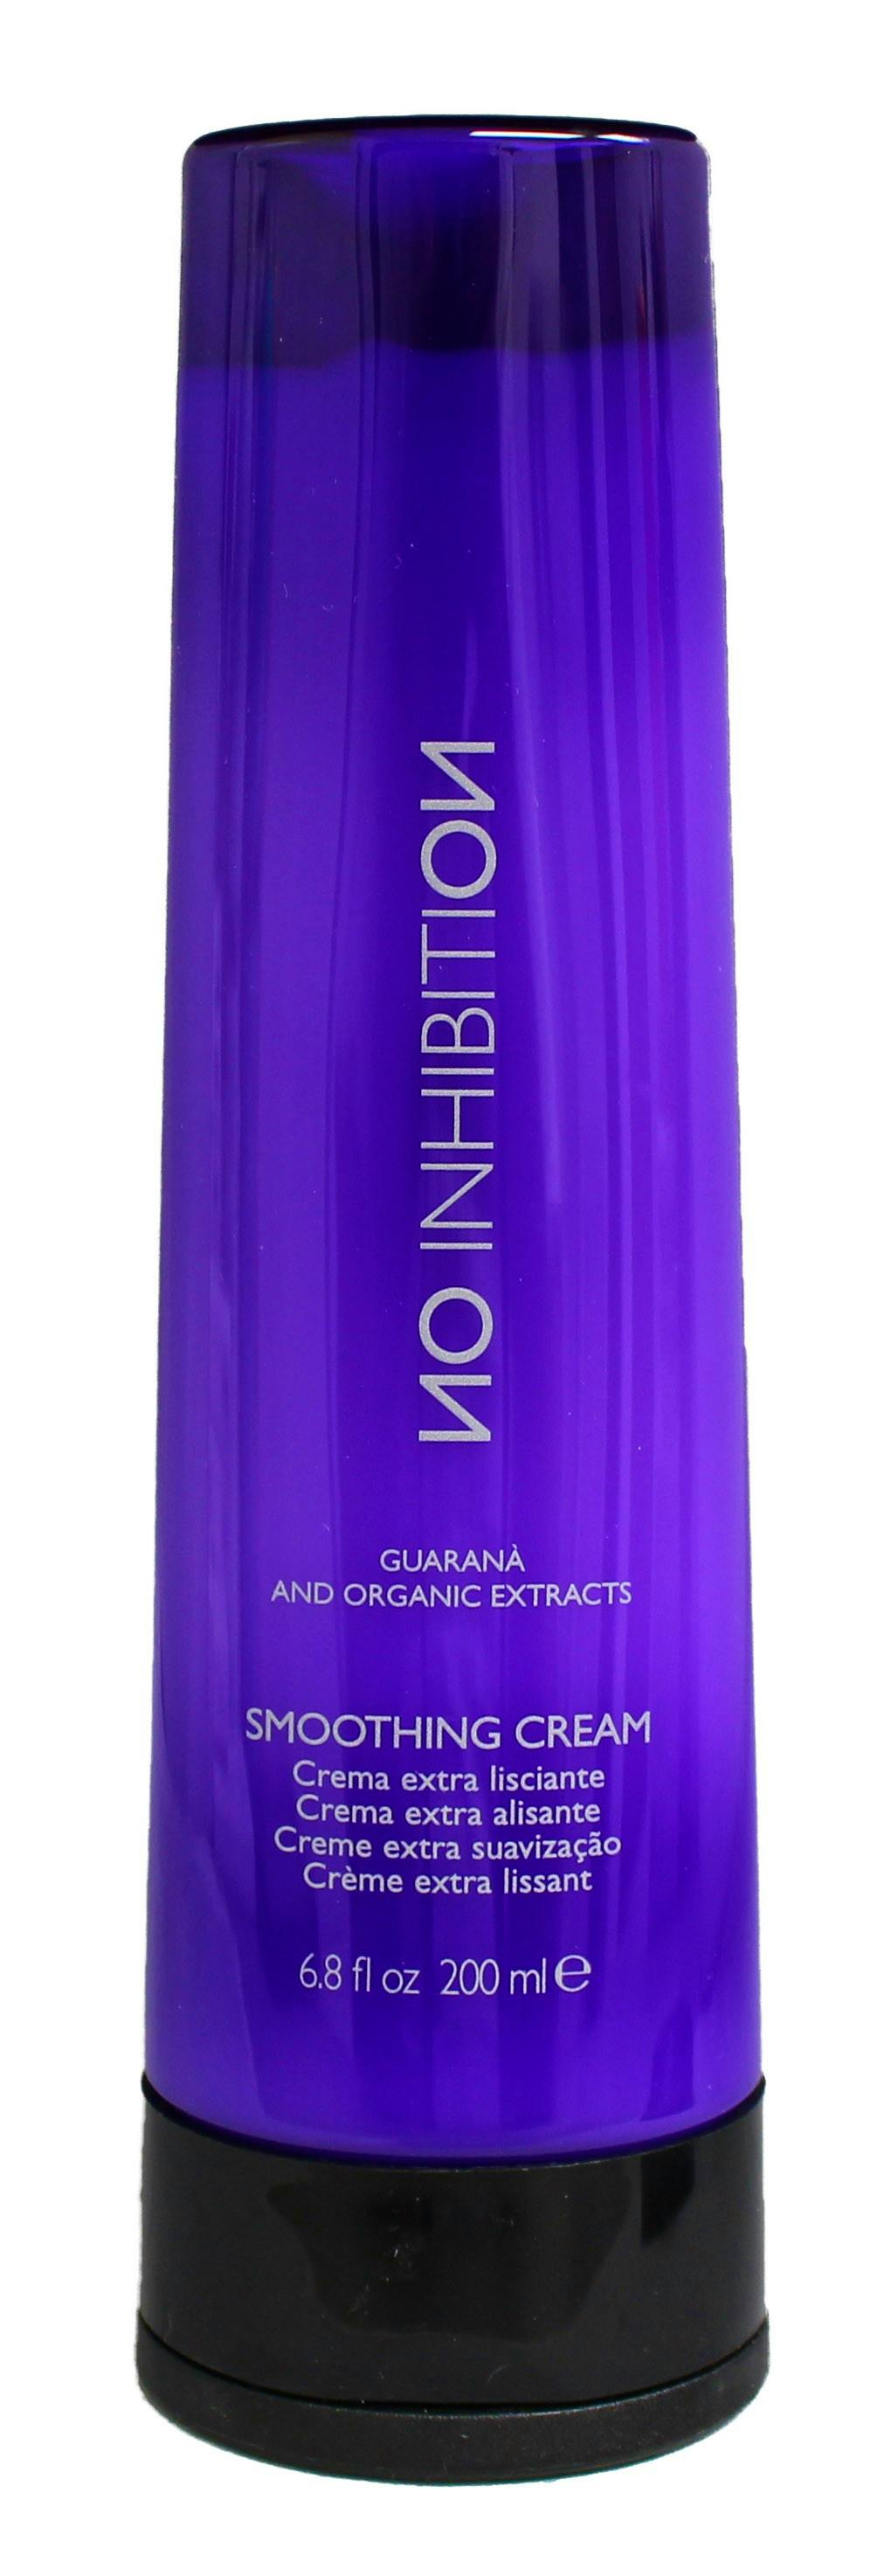 No Inhibition Smoothing Cream 200 Ml 4995 Kr